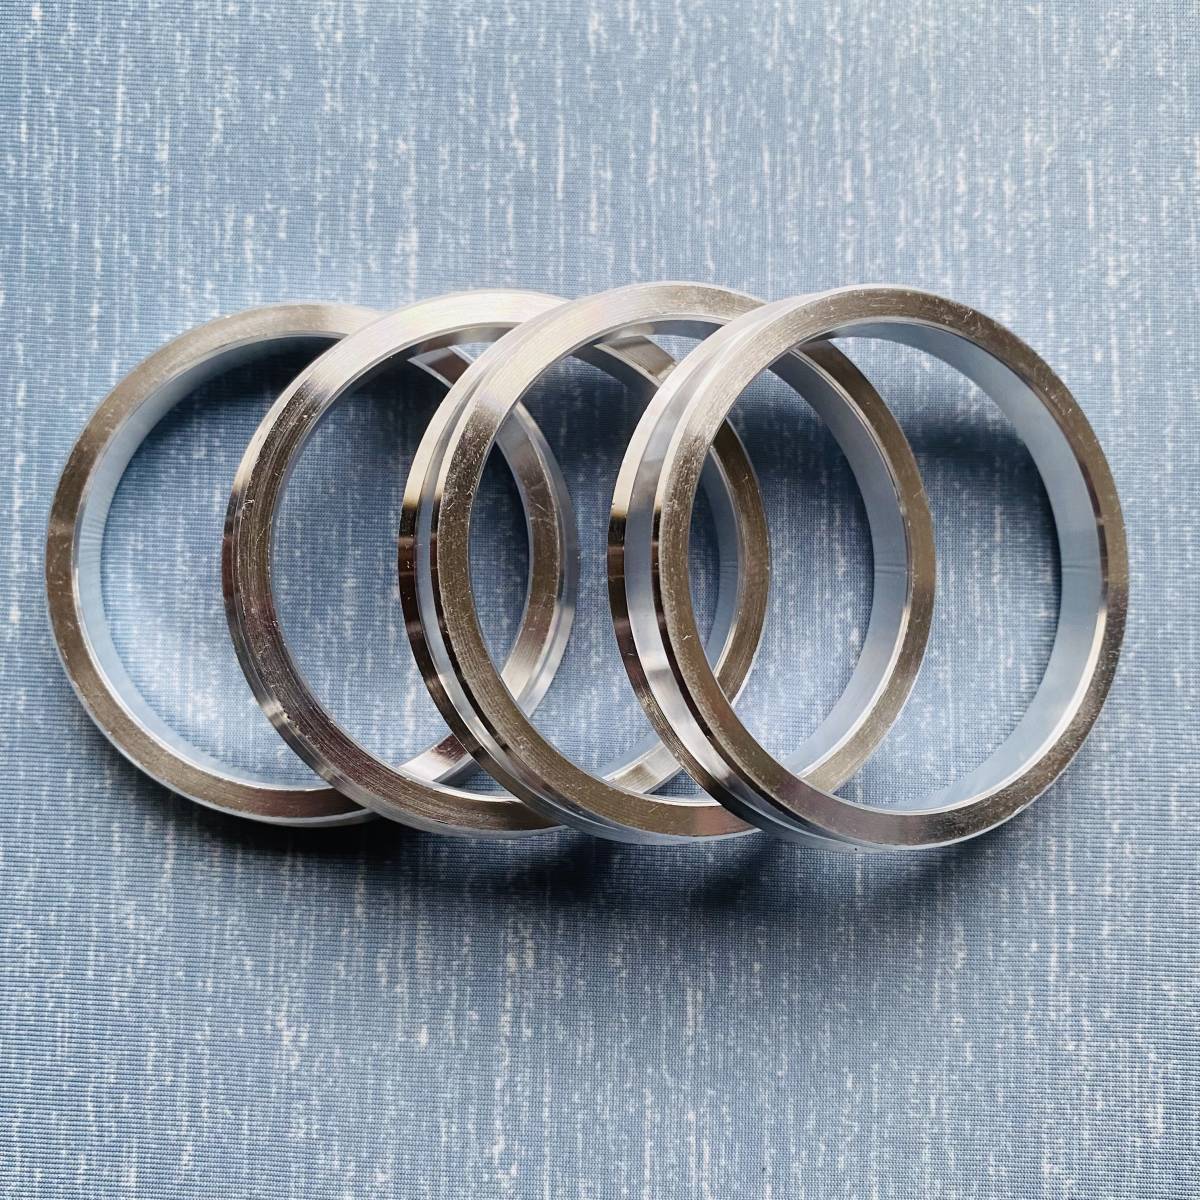 [Бесплатная доставка] Новое продвижение алюминия с Hub Ring Inc. 66,6 мм → 57,1 мм 4 штуки установлены Audi audi Volkswagen Mercedes -Benz L